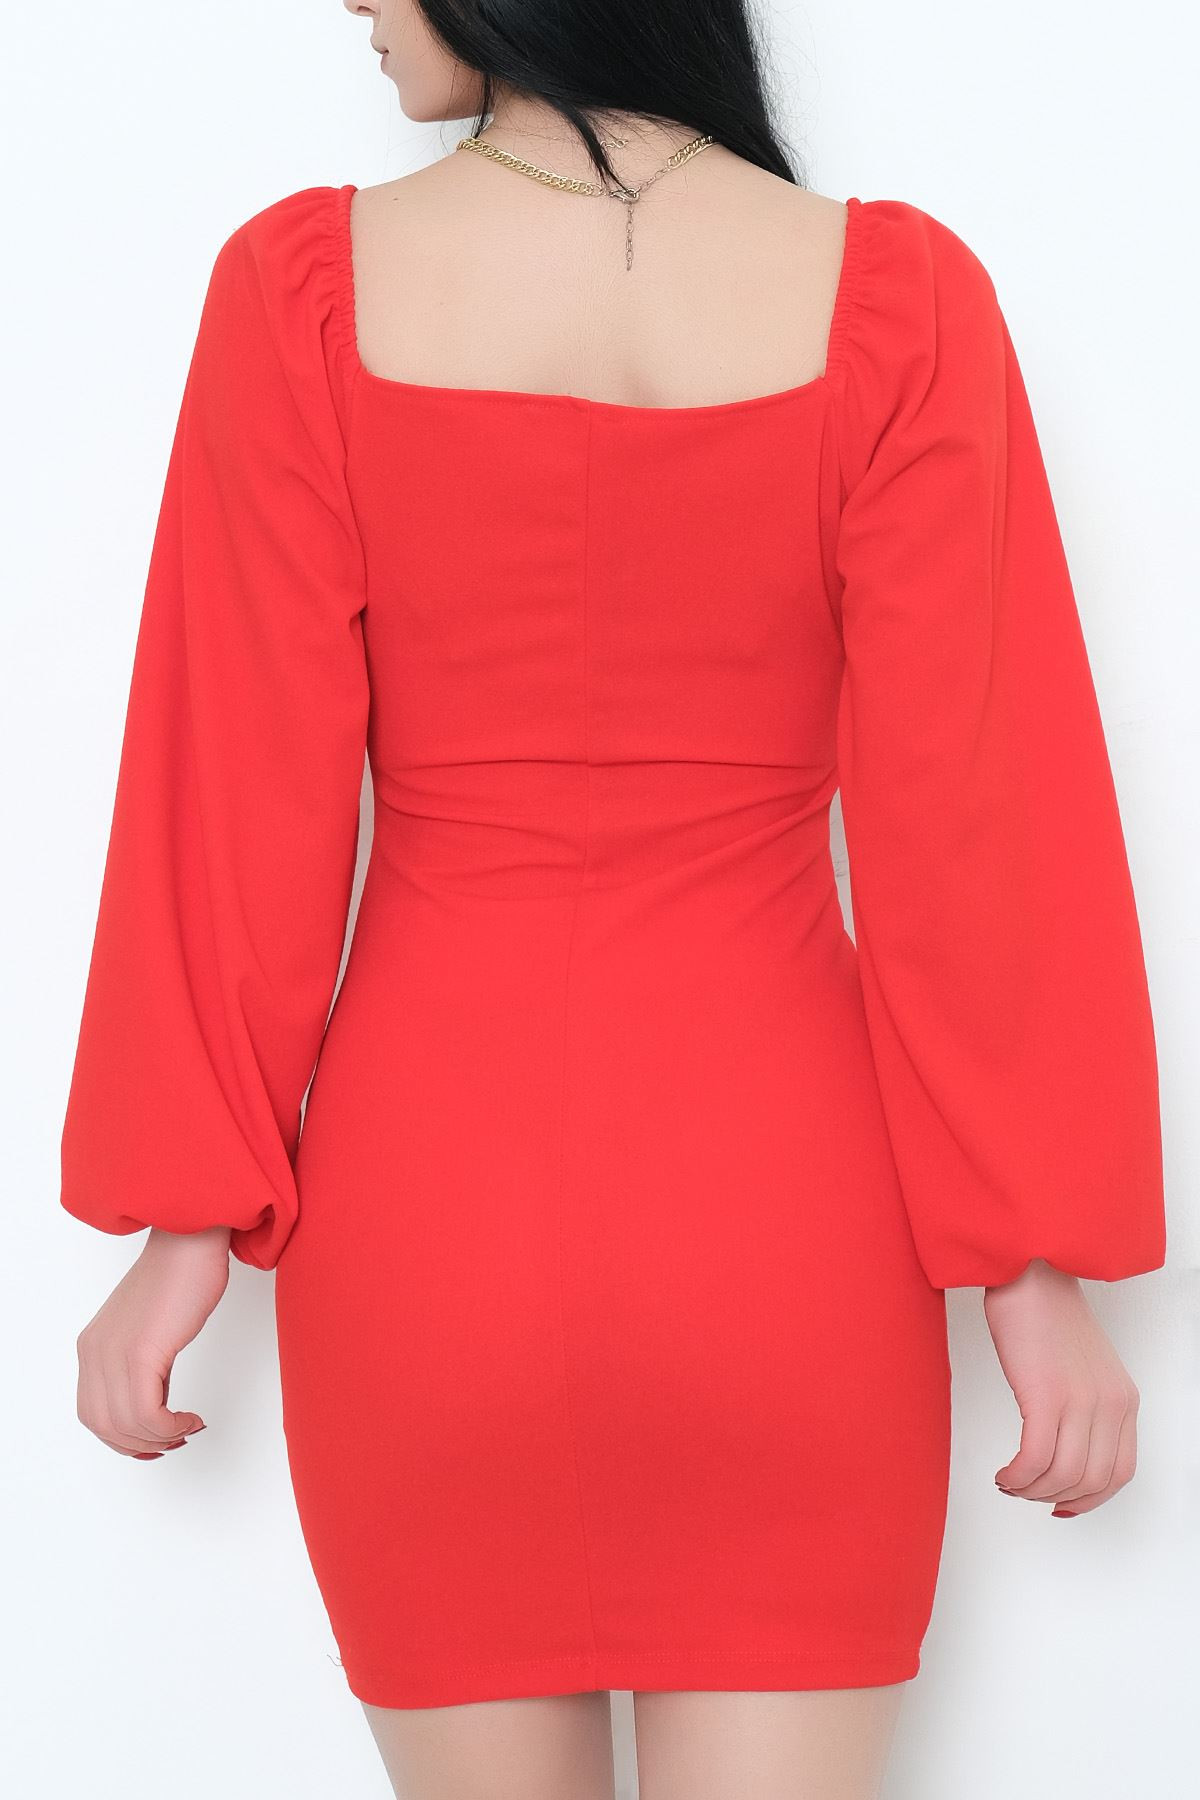 Yaka Bağcıklı Elbise Kırmızı - 581890.1592.